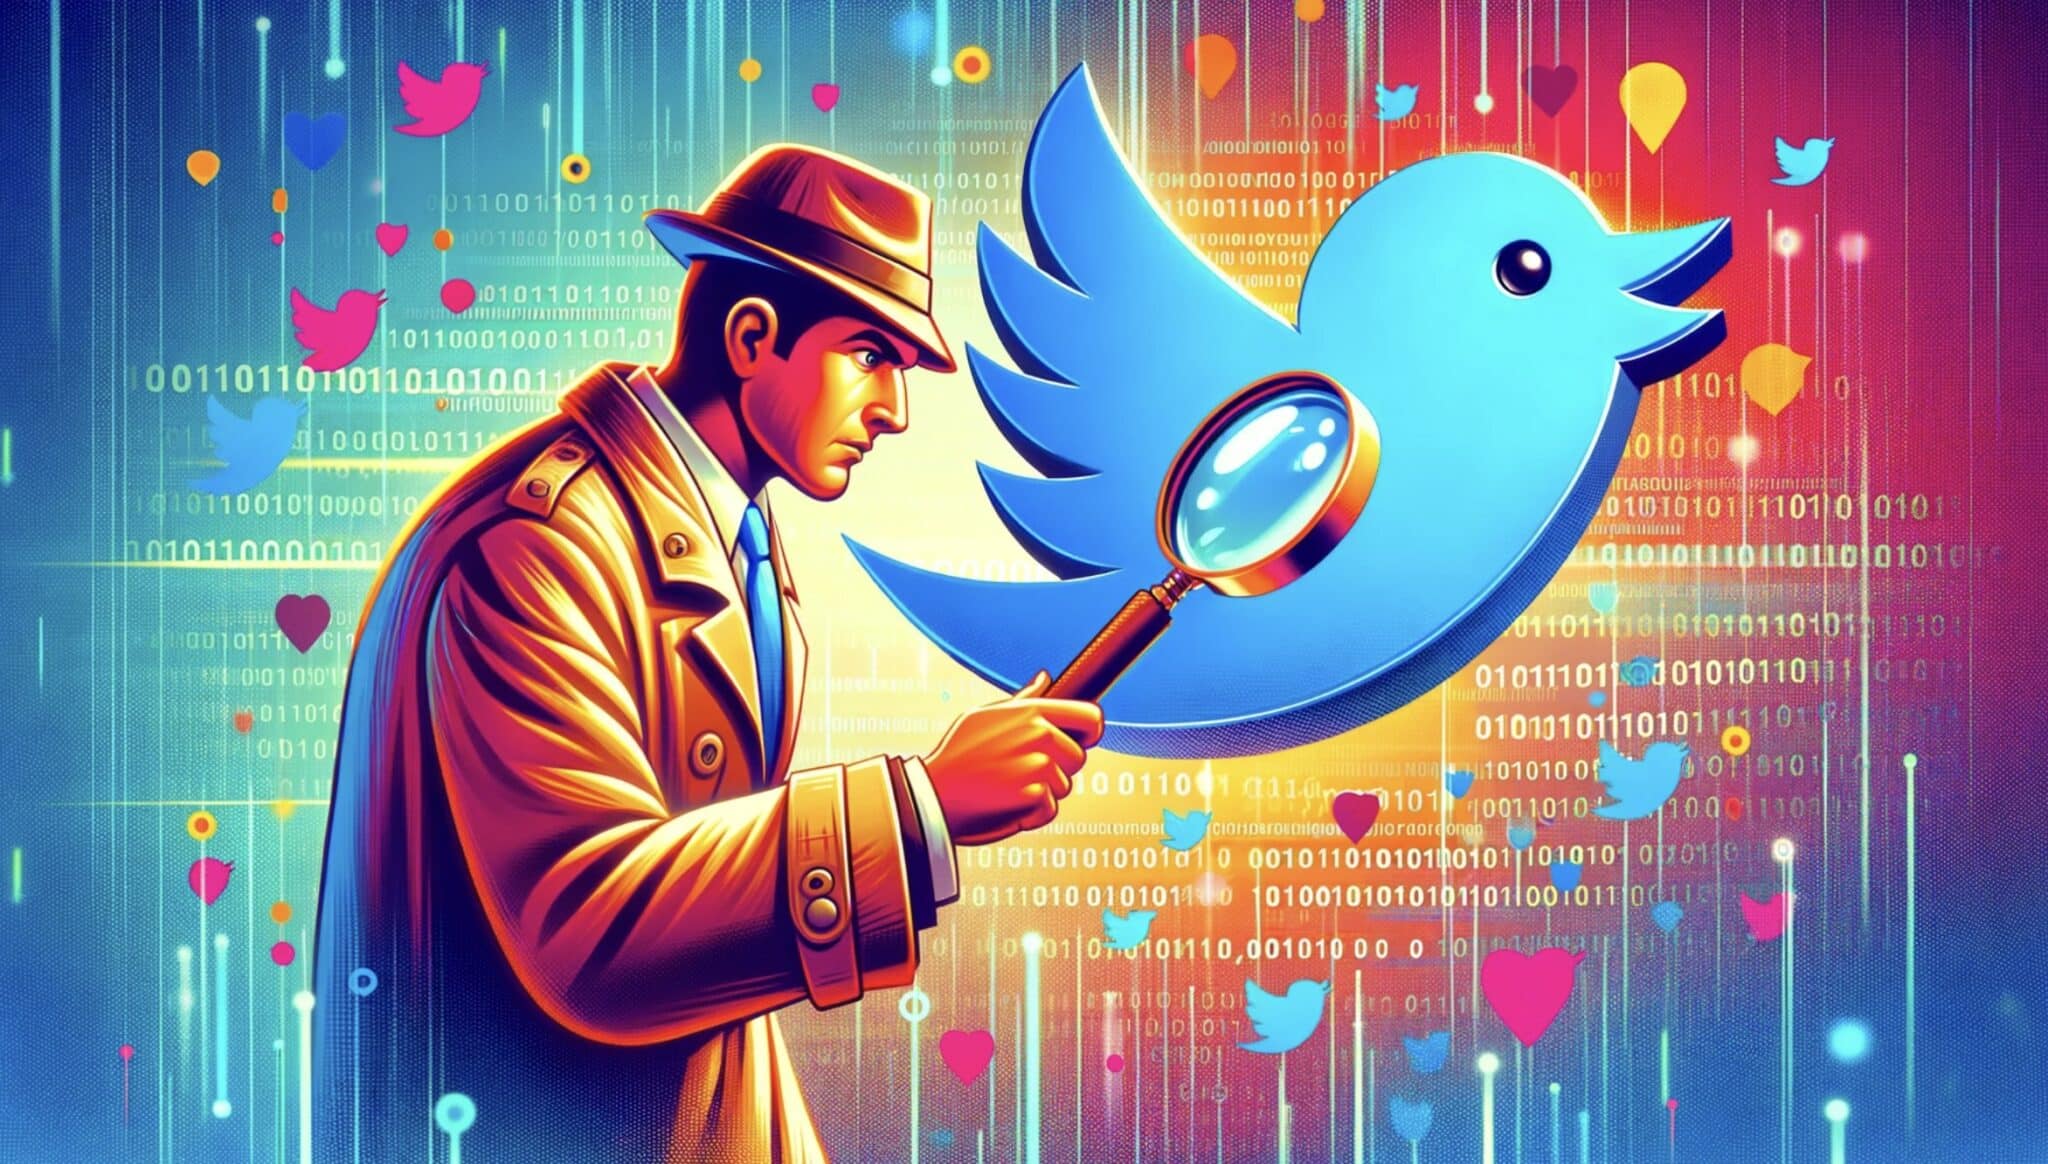 Come tenere traccia di chi visita il tuo profilo Twitter: svelare la verità